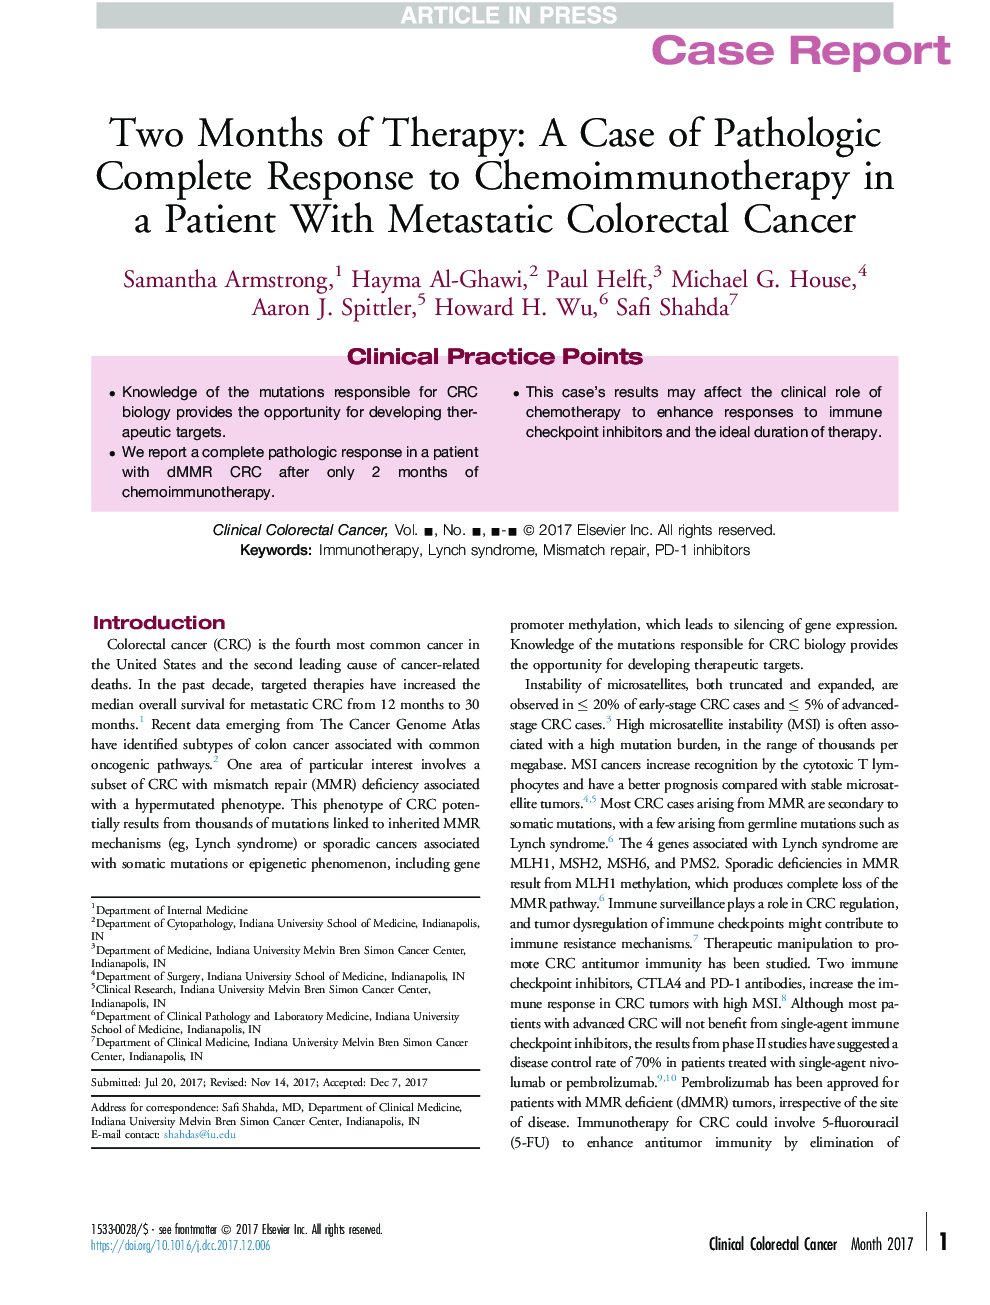 دو ماه درمان: یک مورد واکنش پاتولوژیک به شیمی درمانی در بیمار مبتلا به سرطان کولورکتال متاستاتیک 